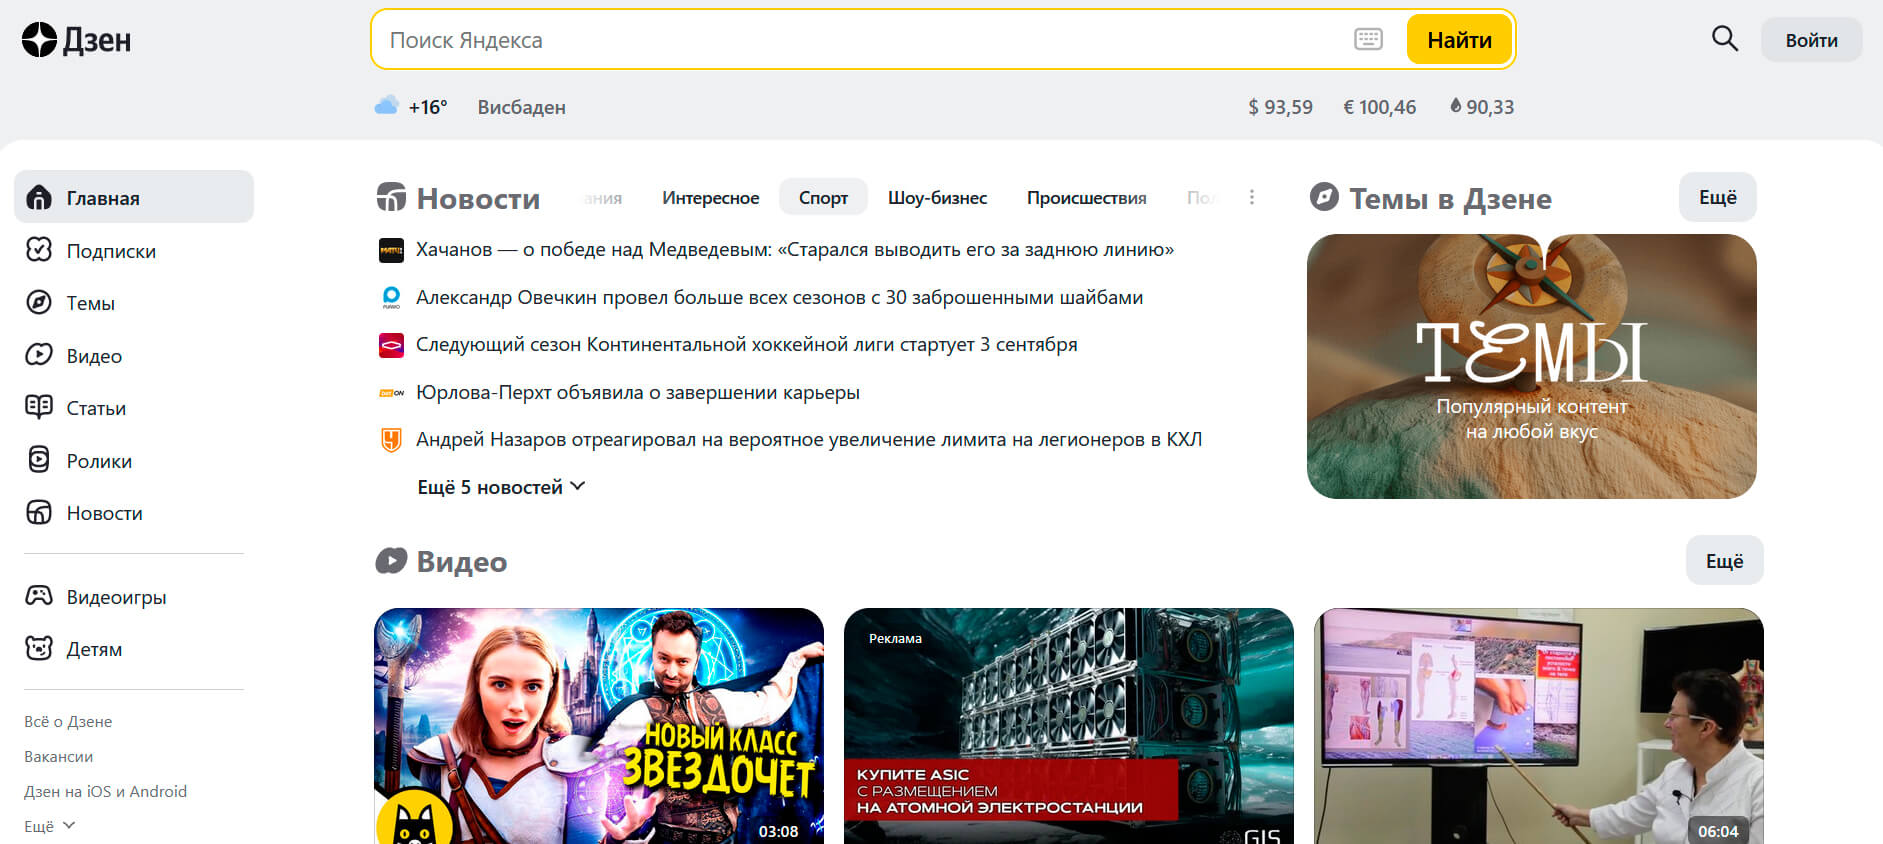 Яндекс.Дзен (скриншот, фото)